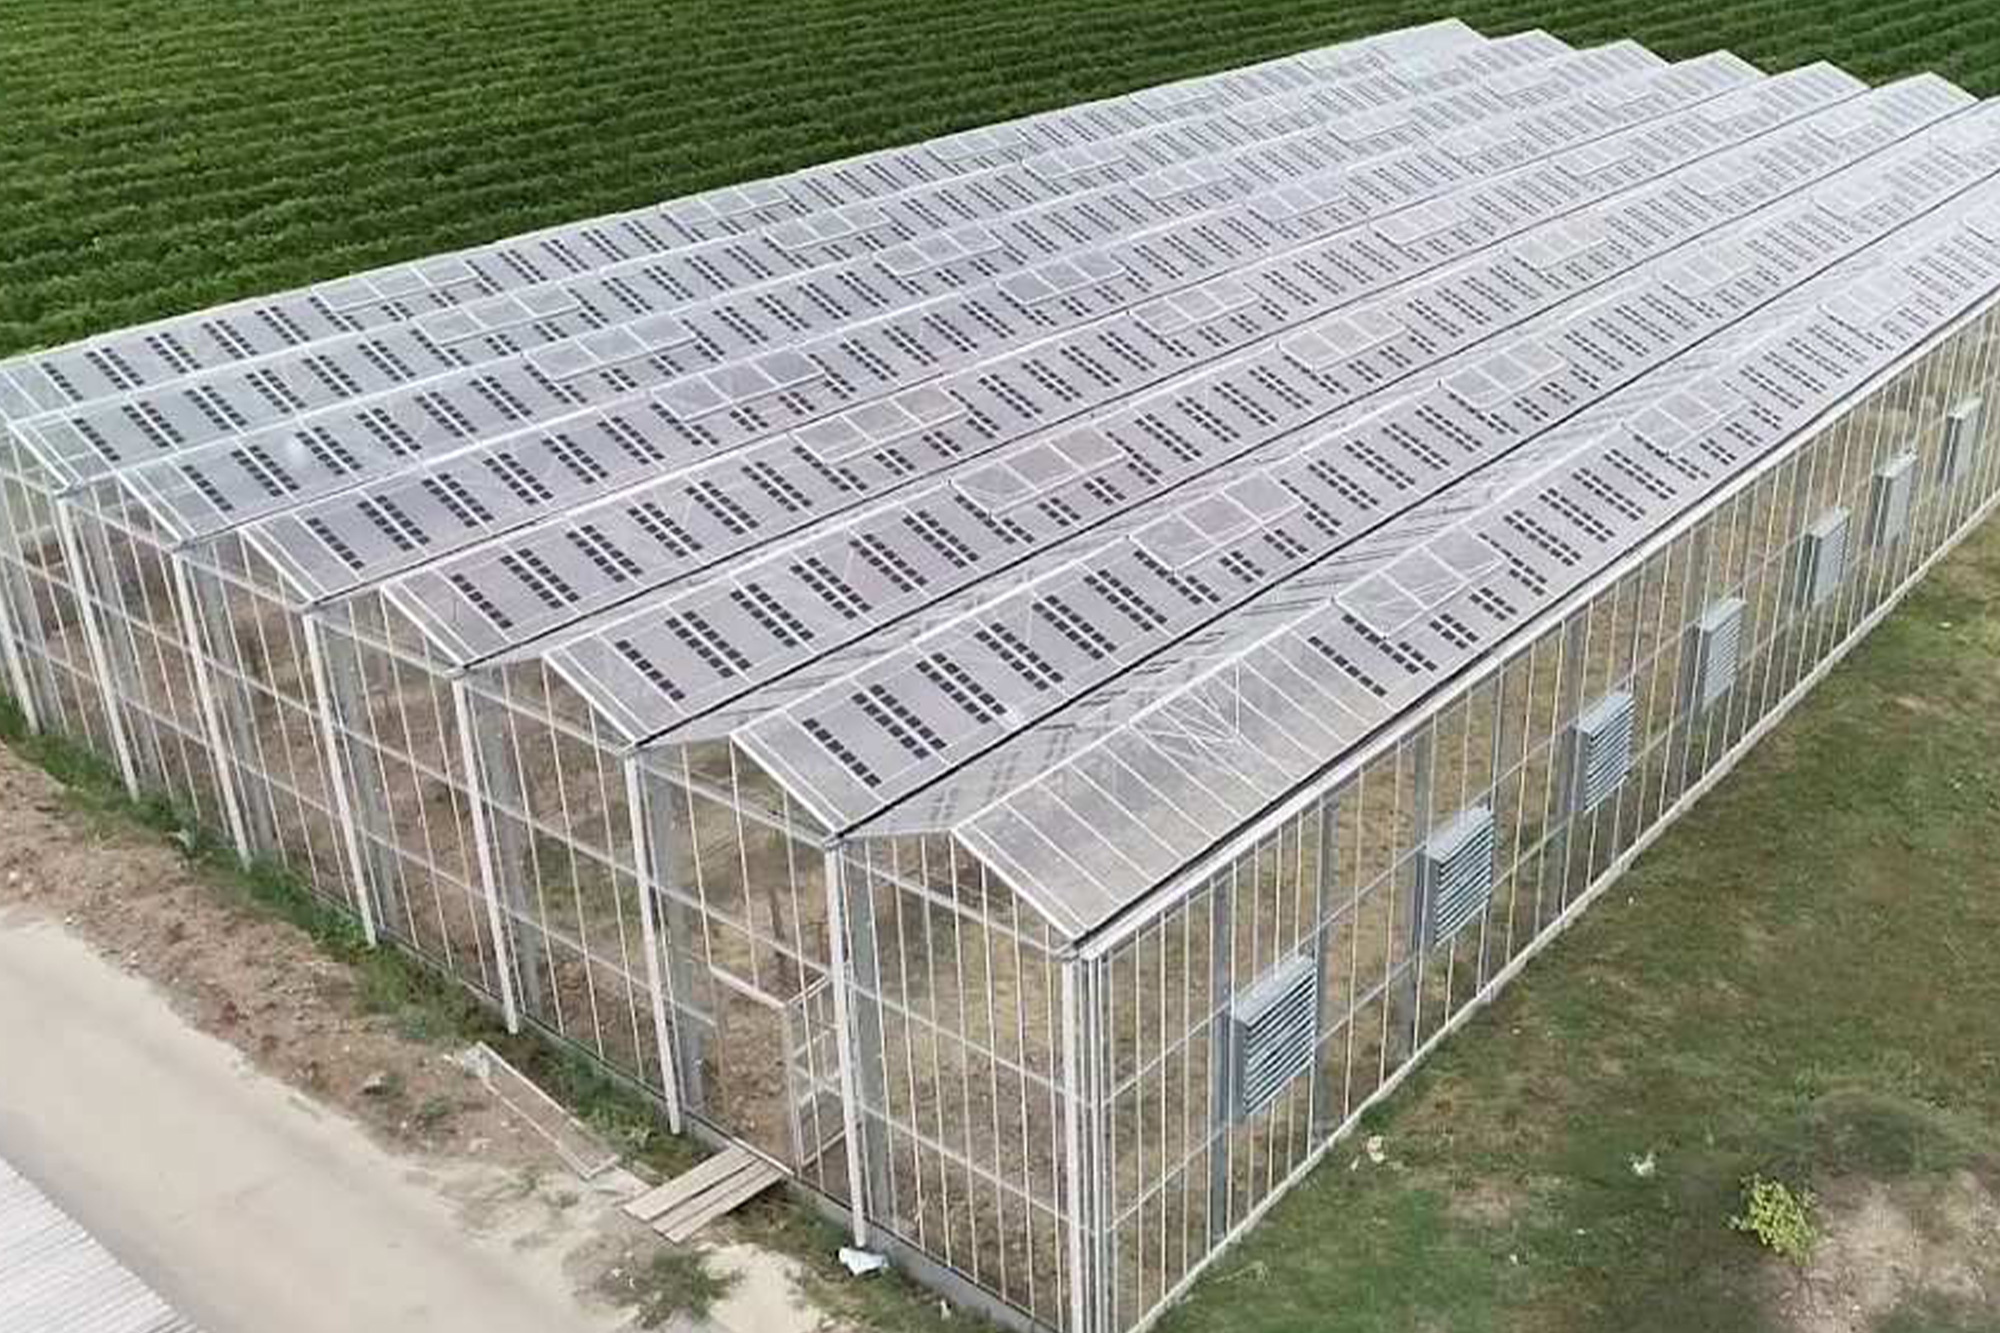 Aplikazio agrivoltaikoetarako panel fotovoltaikoen Europako lehen ekoizpen-lerroa egingo du Mondragon Assemblyk